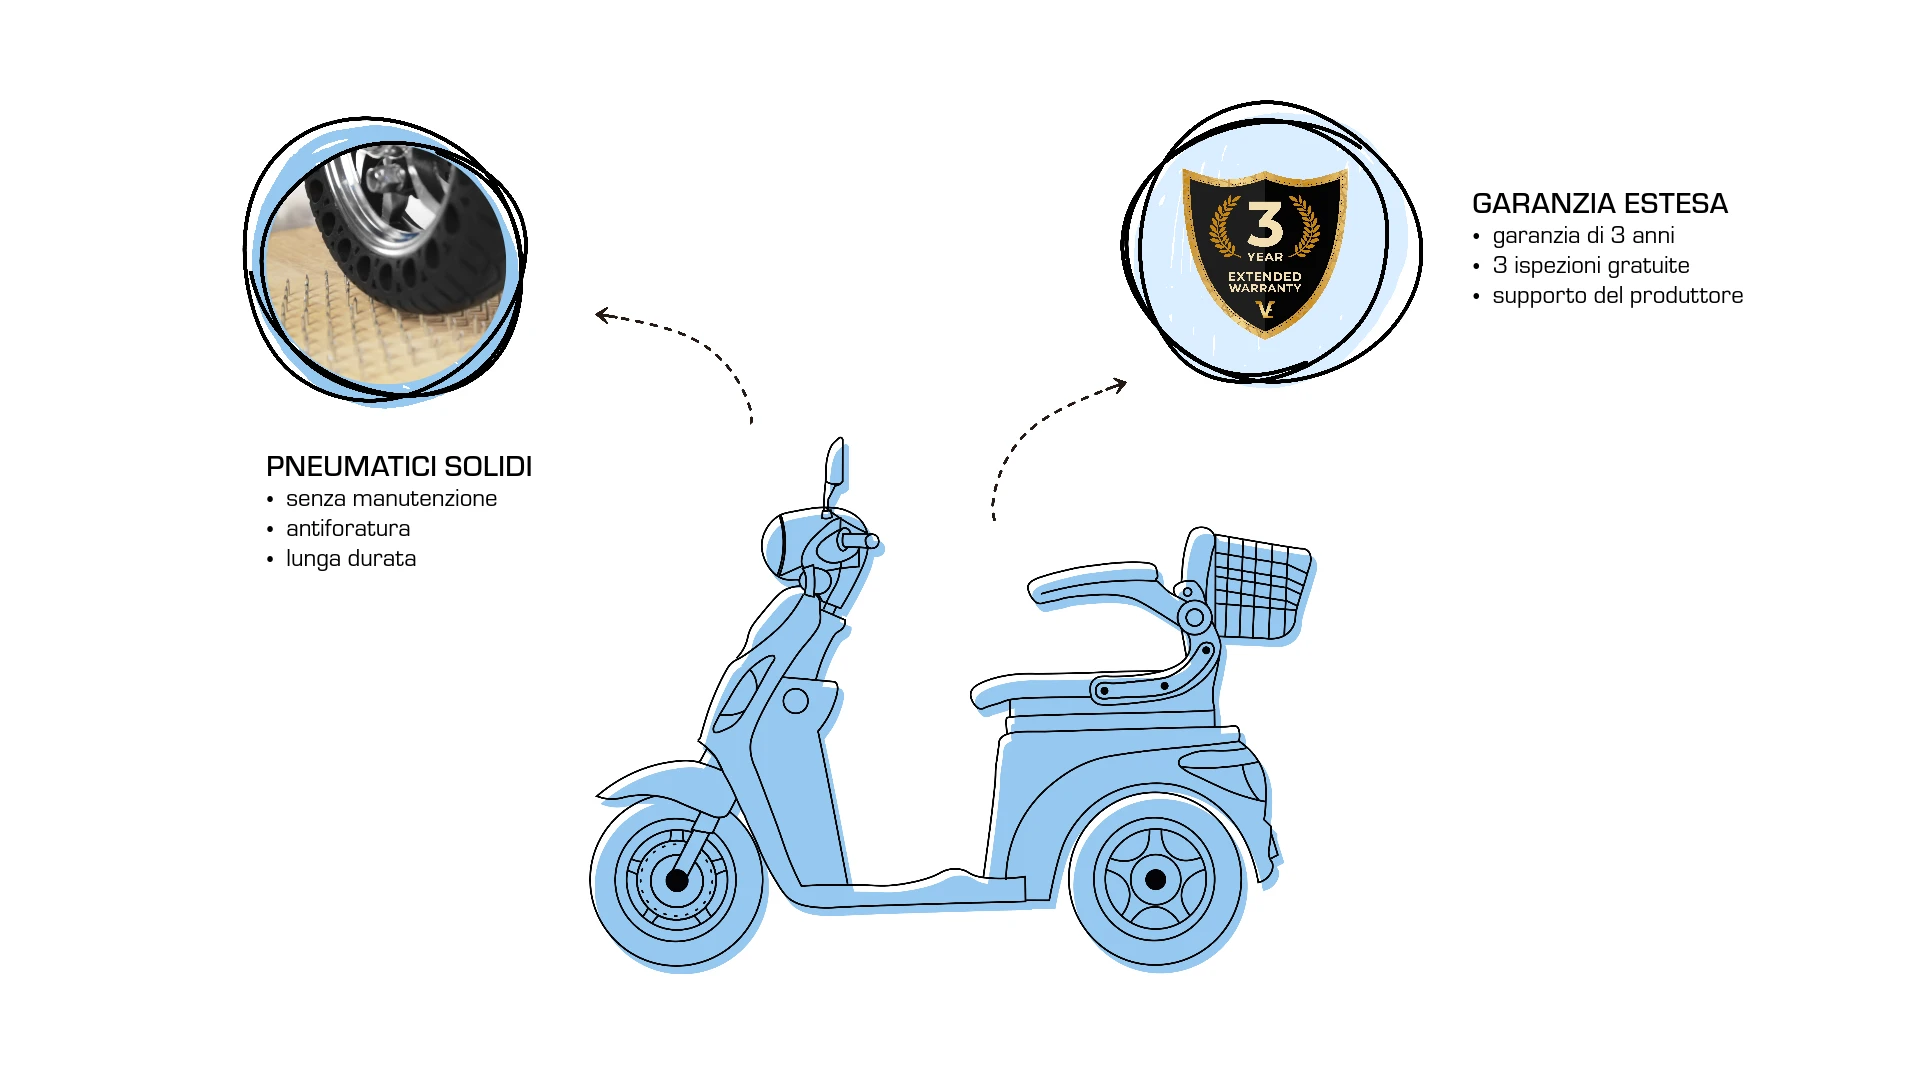 Extra, aggiornamenti, pneumatici solidi per scooter Veleco ZT15, estensione della garanzia